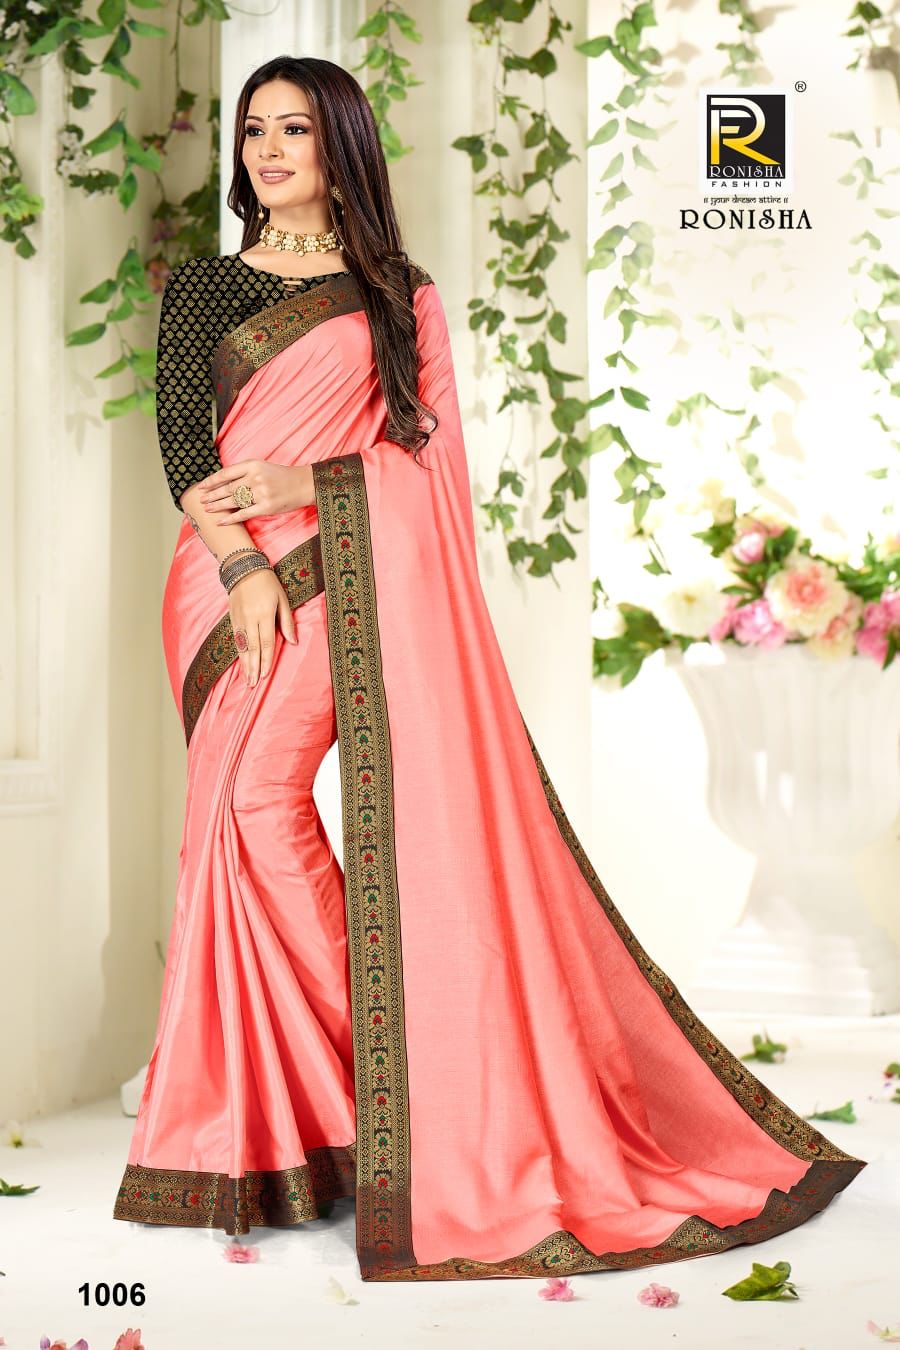 Ronisha Fashion Rajkumari 1006